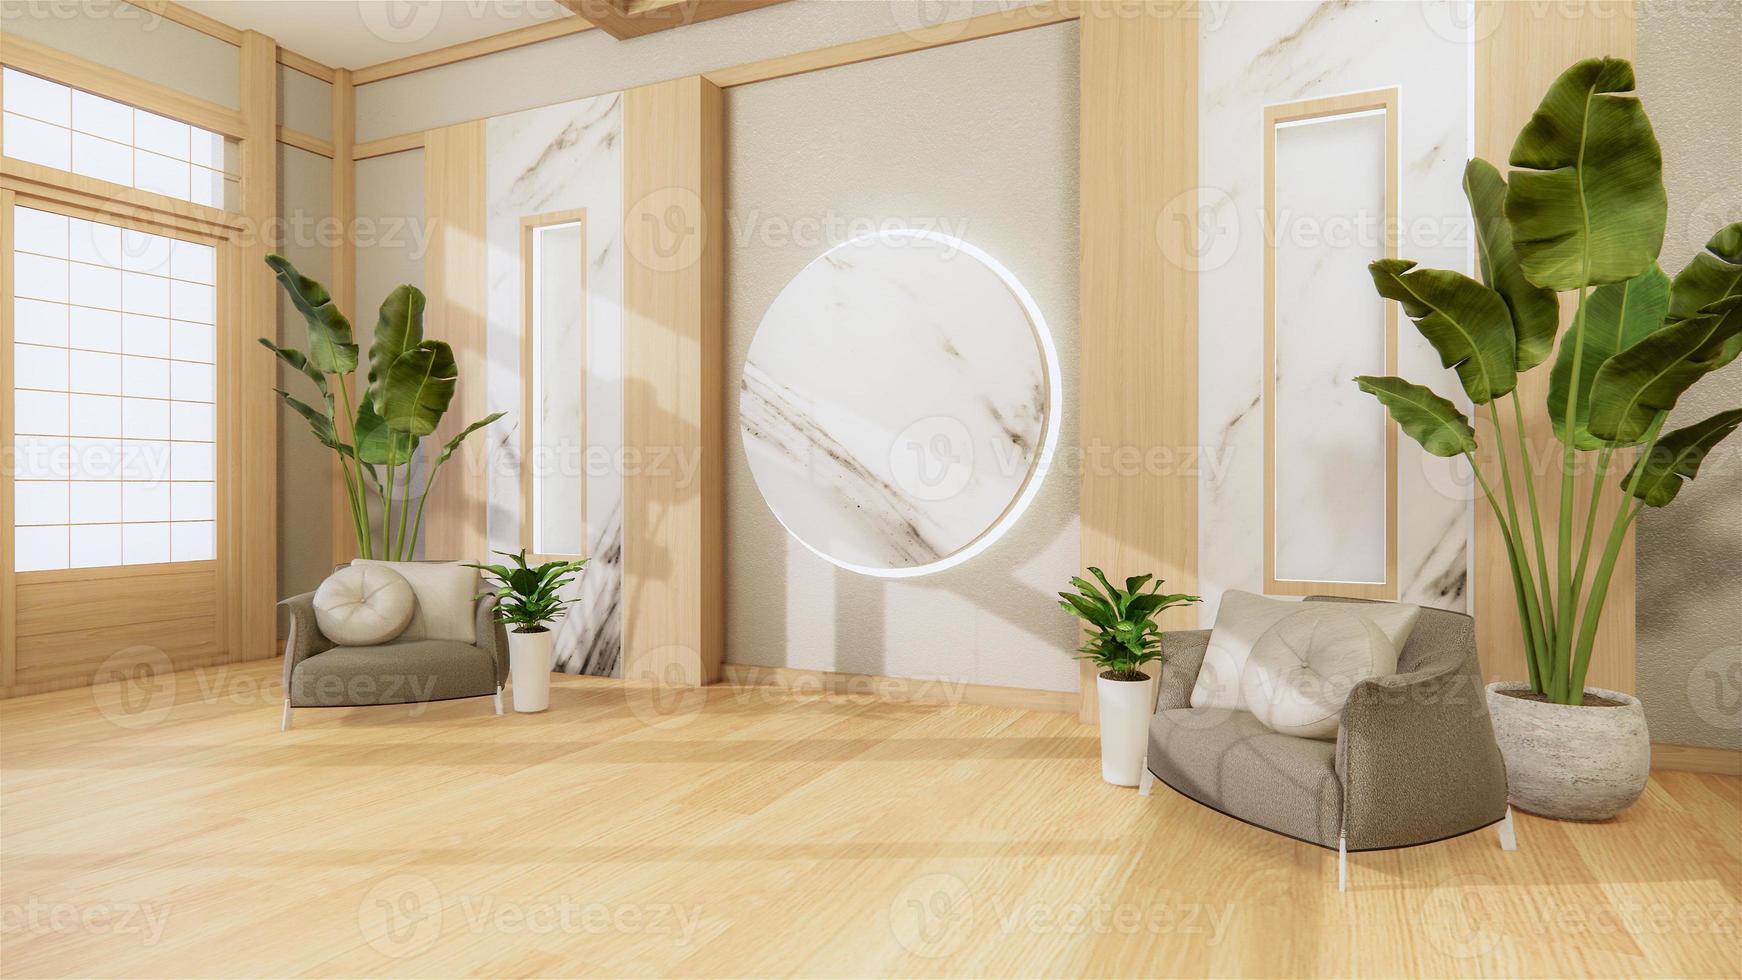 bank Japanse stijl op kamer Japan en de witte achtergrond biedt een venster voor bewerking. 3D-rendering foto